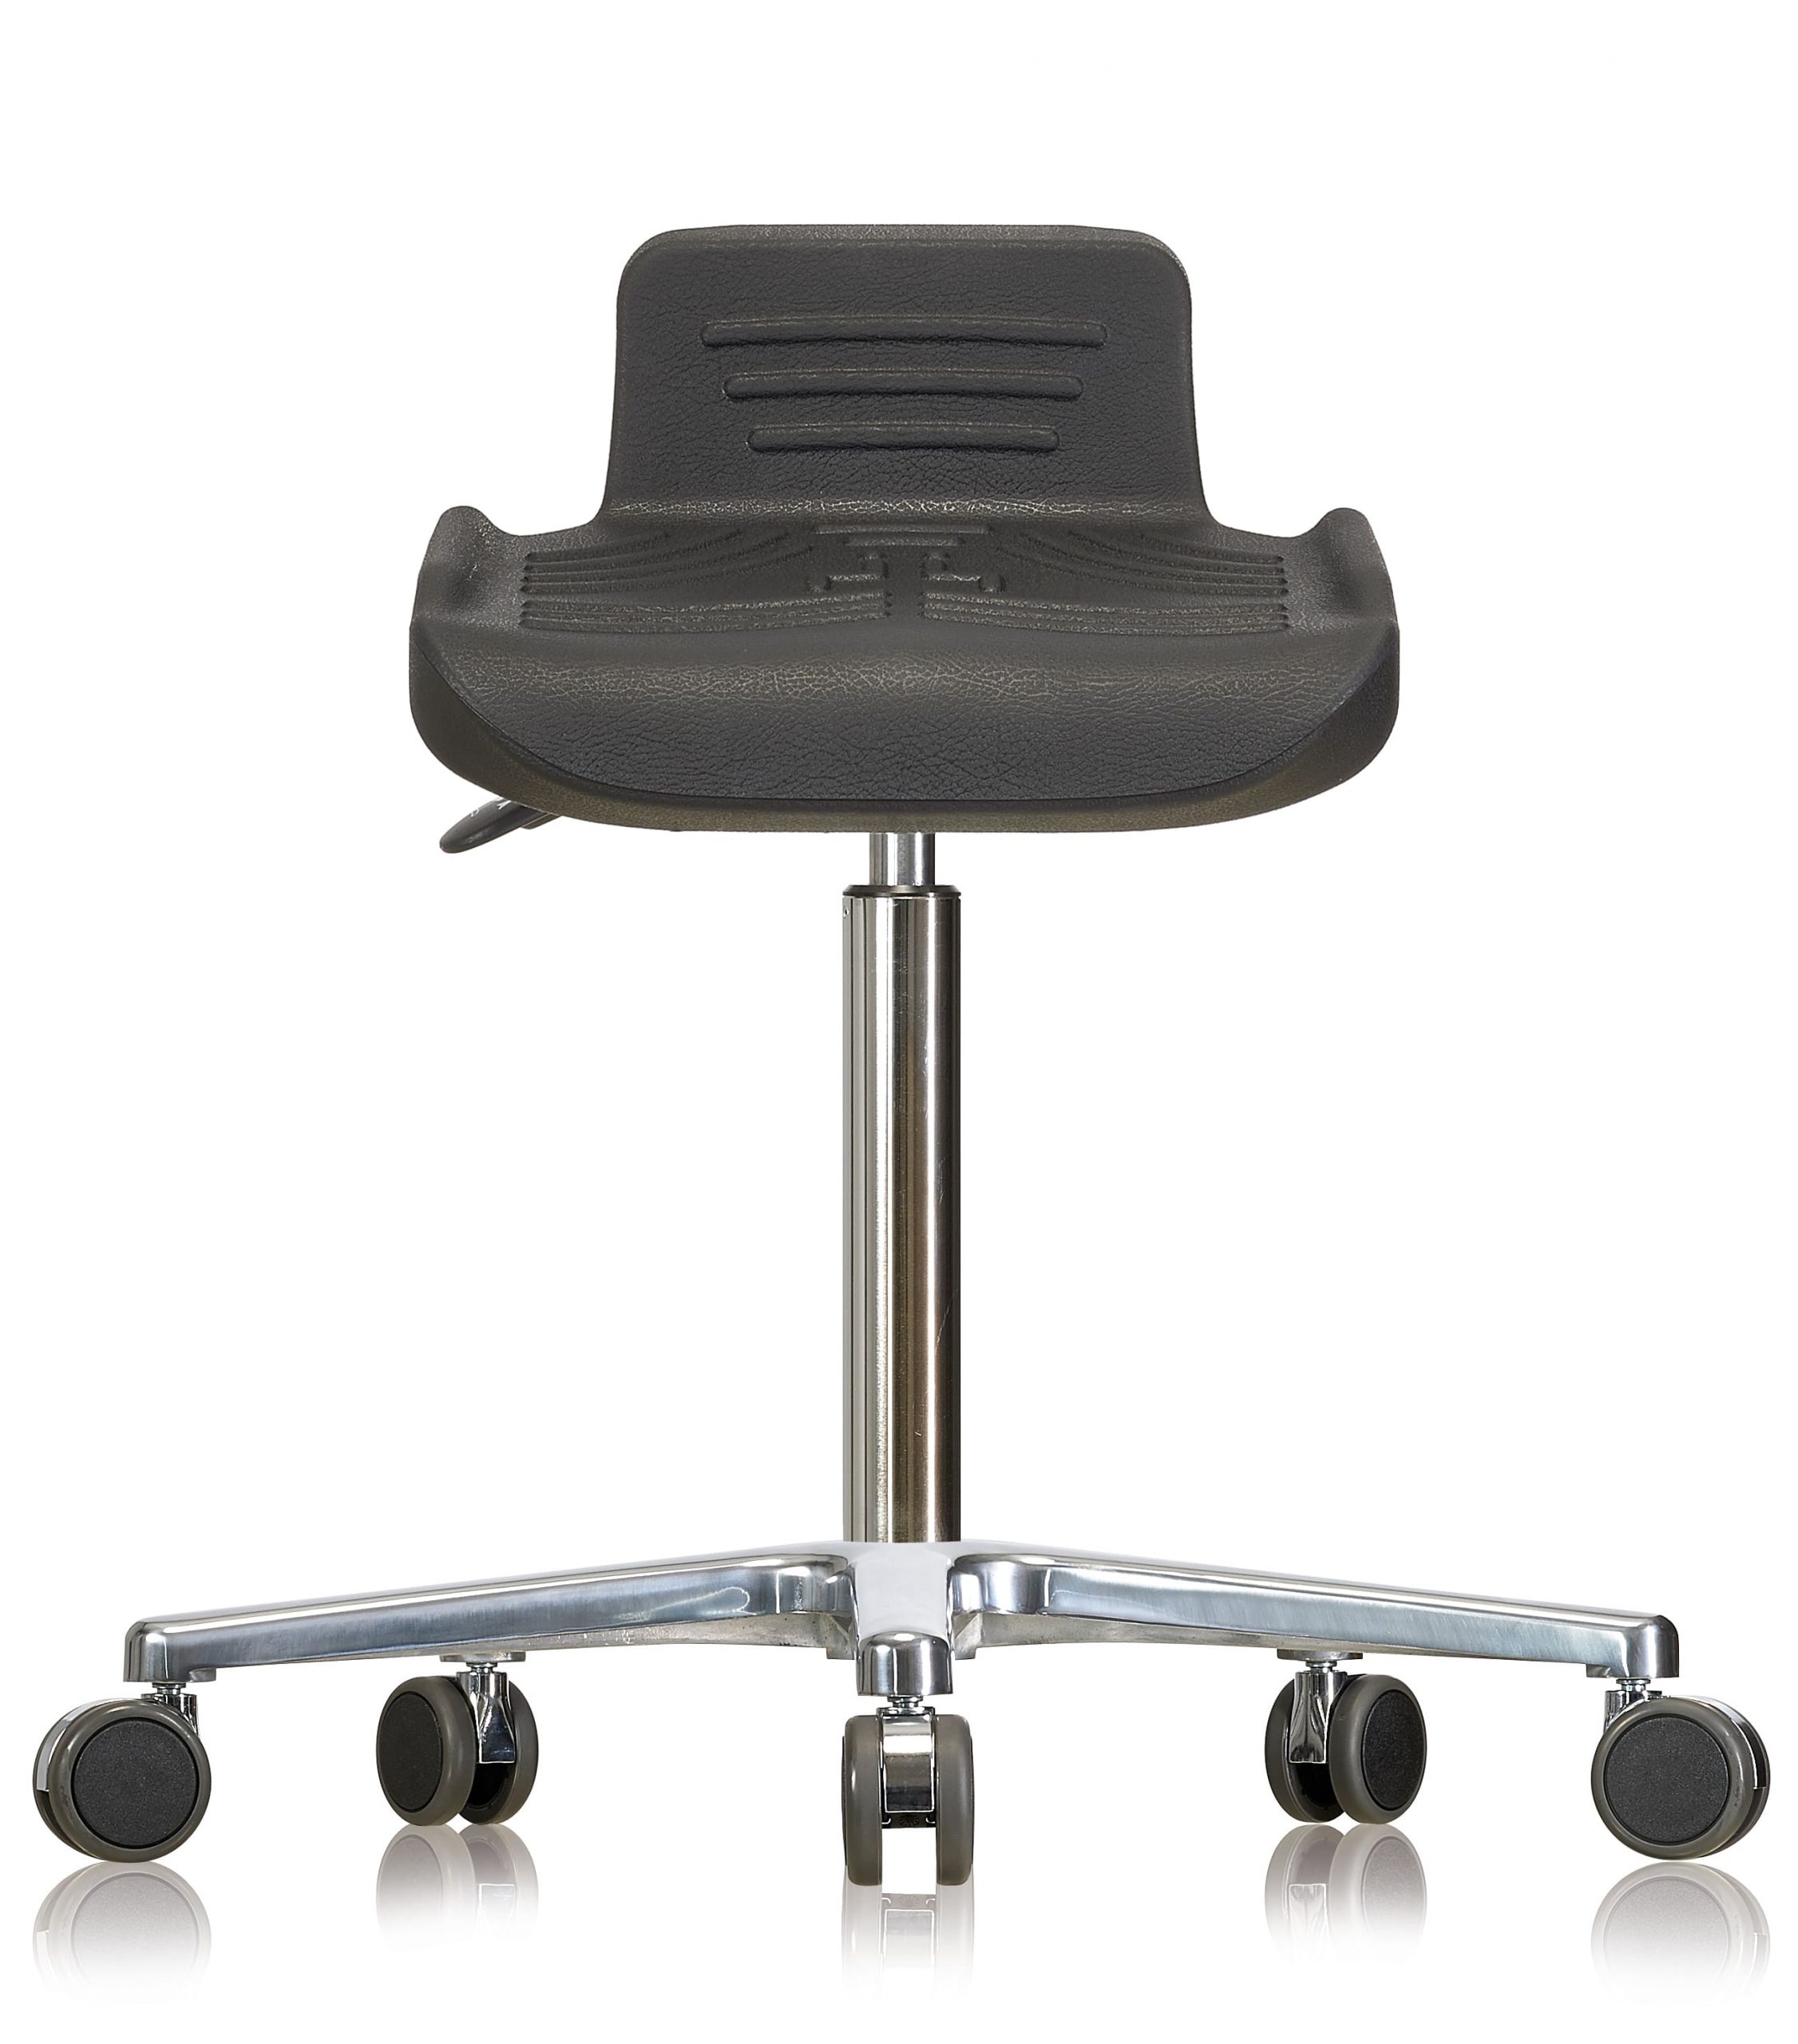 💺 Siège assis-debout ergonomique professionnel - Ergofrance